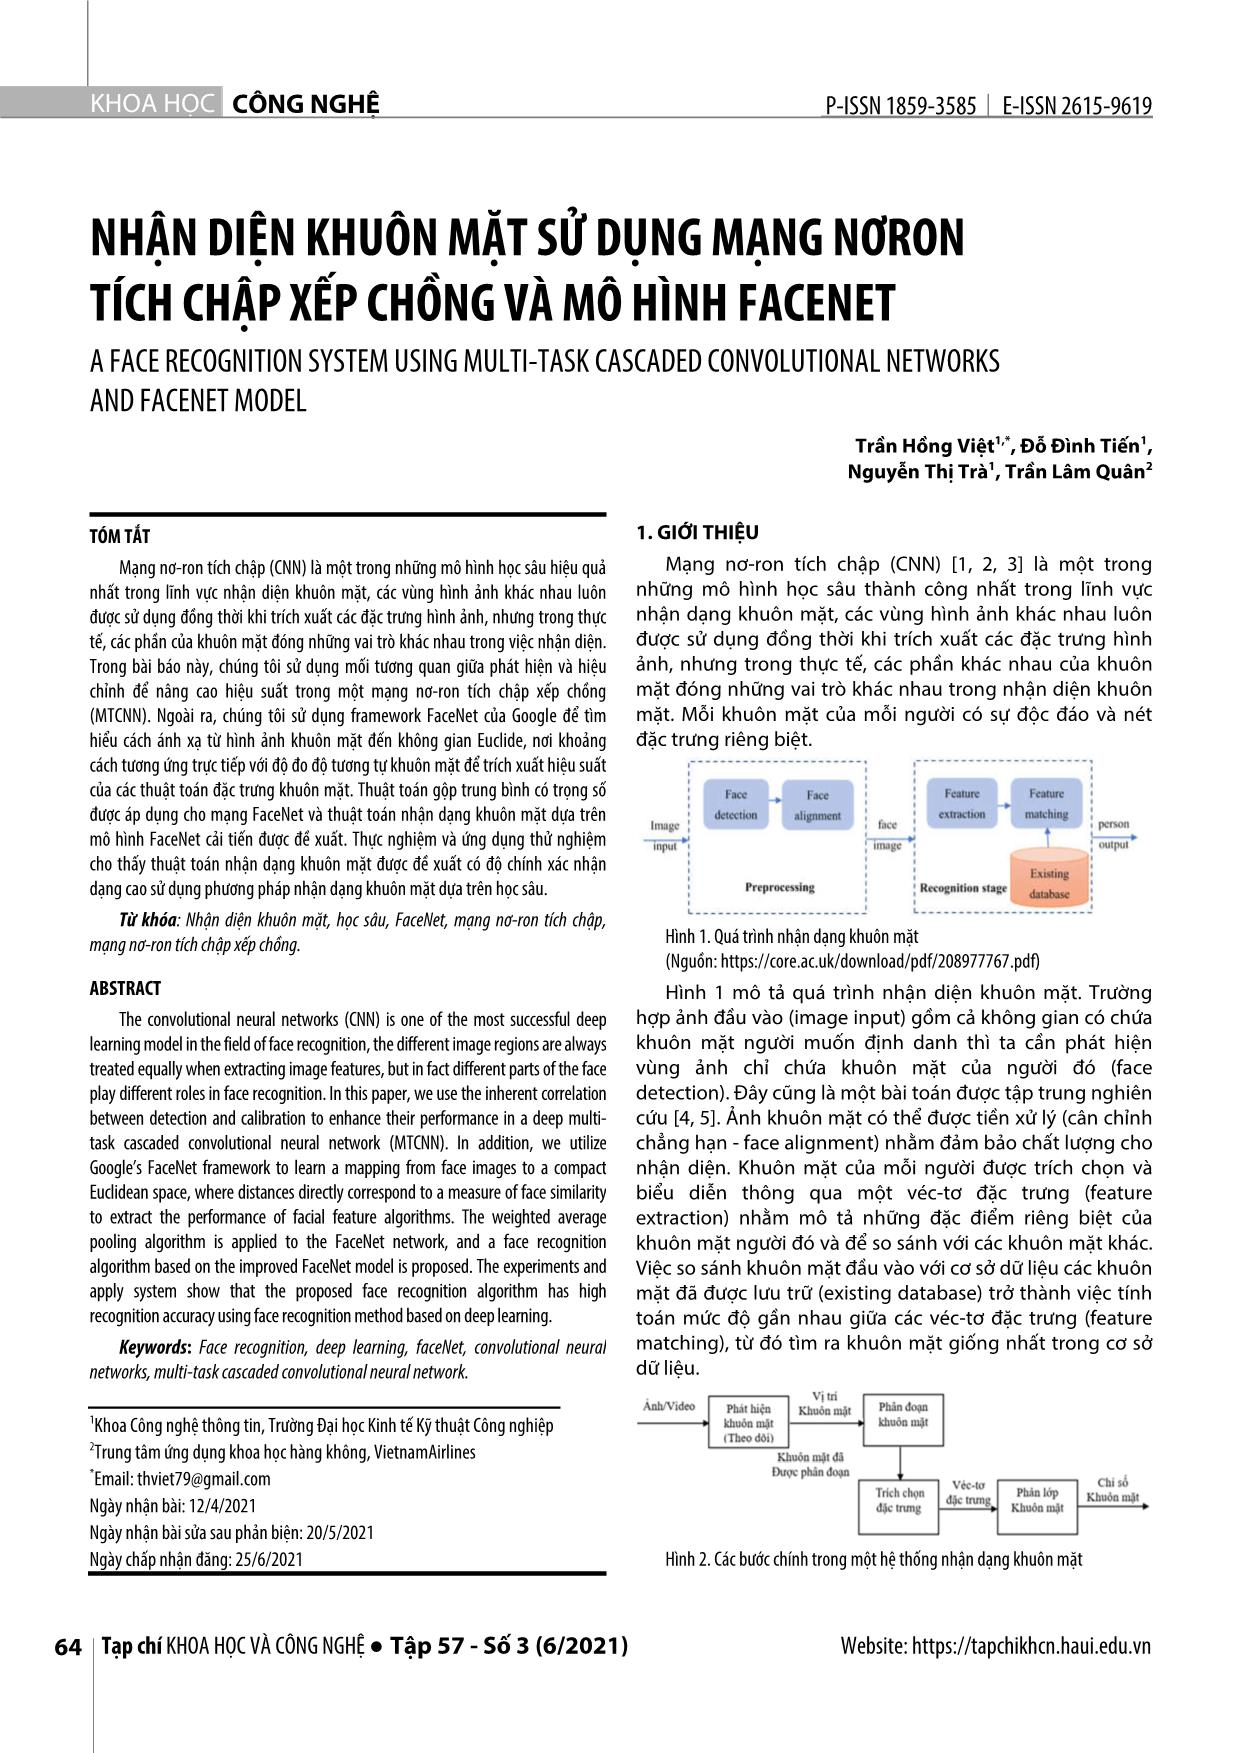 Nhận diện khuôn mặt sử dụng mạng nơron tích chập xếp chồng và mô hình FaceNet trang 1